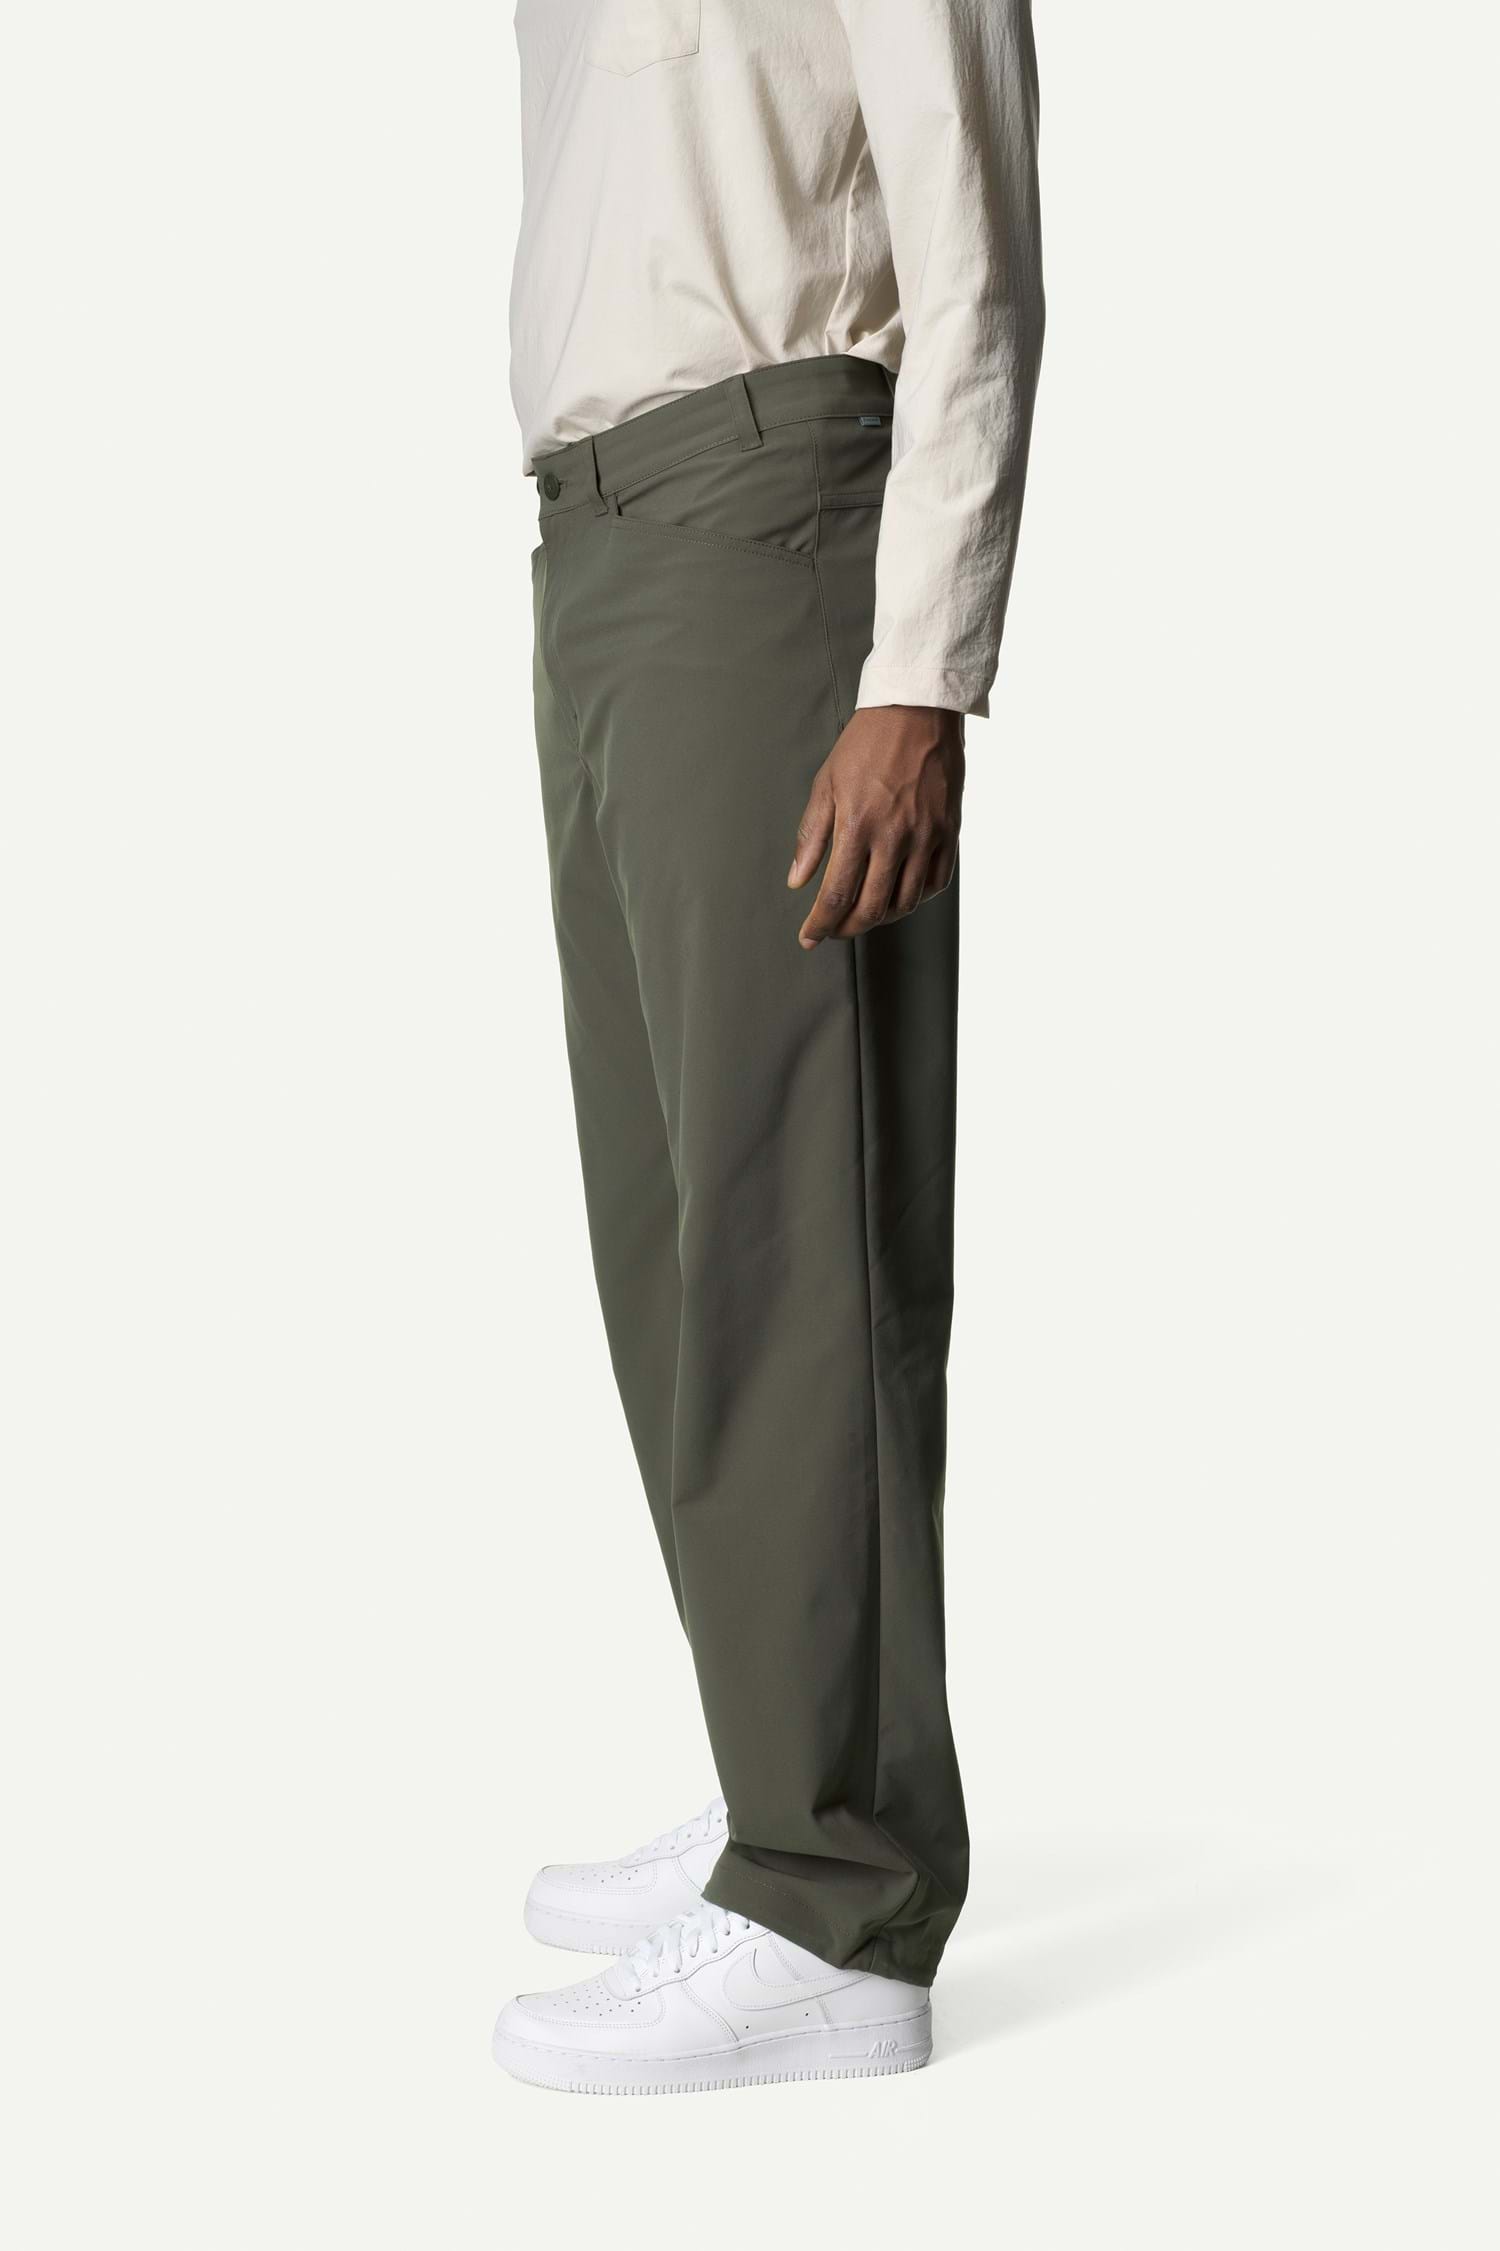 Houdini M's Dock Pants - Men's outdoor pants